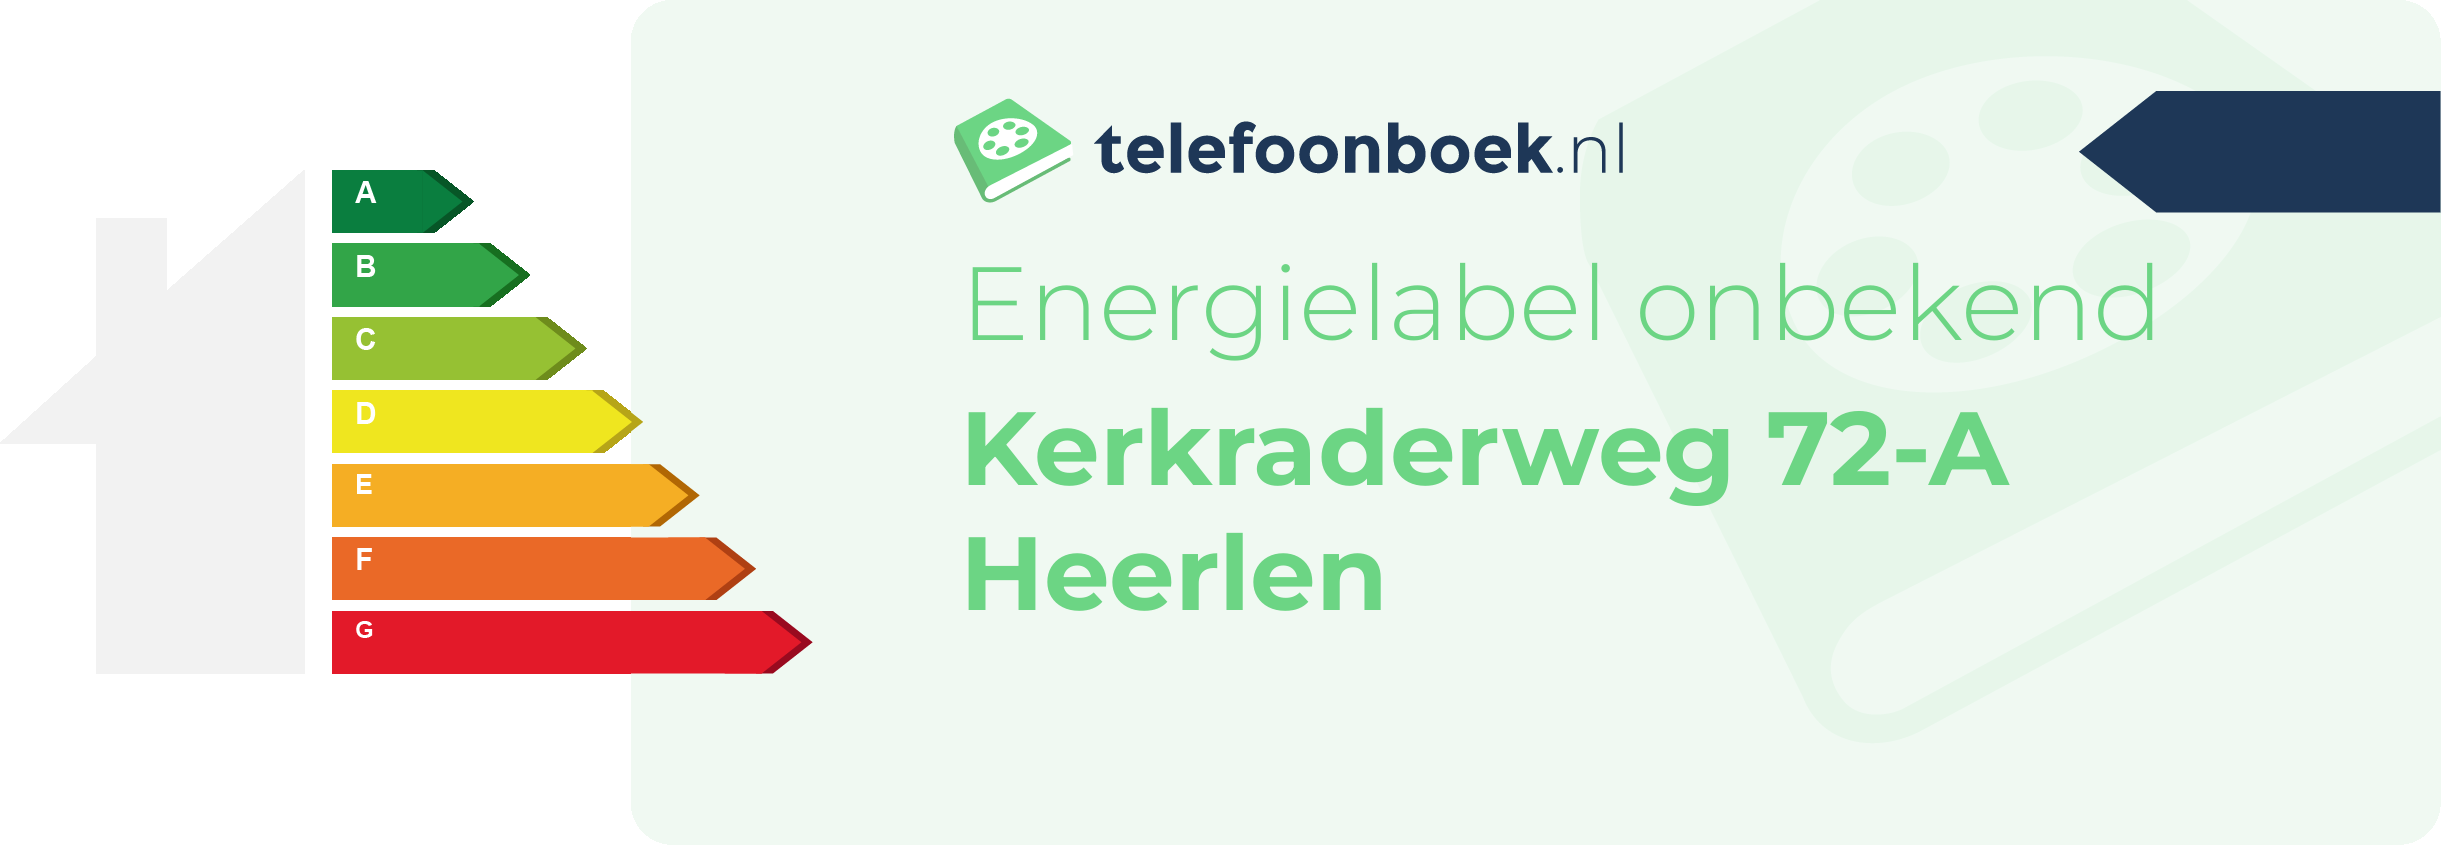 Energielabel Kerkraderweg 72-A Heerlen